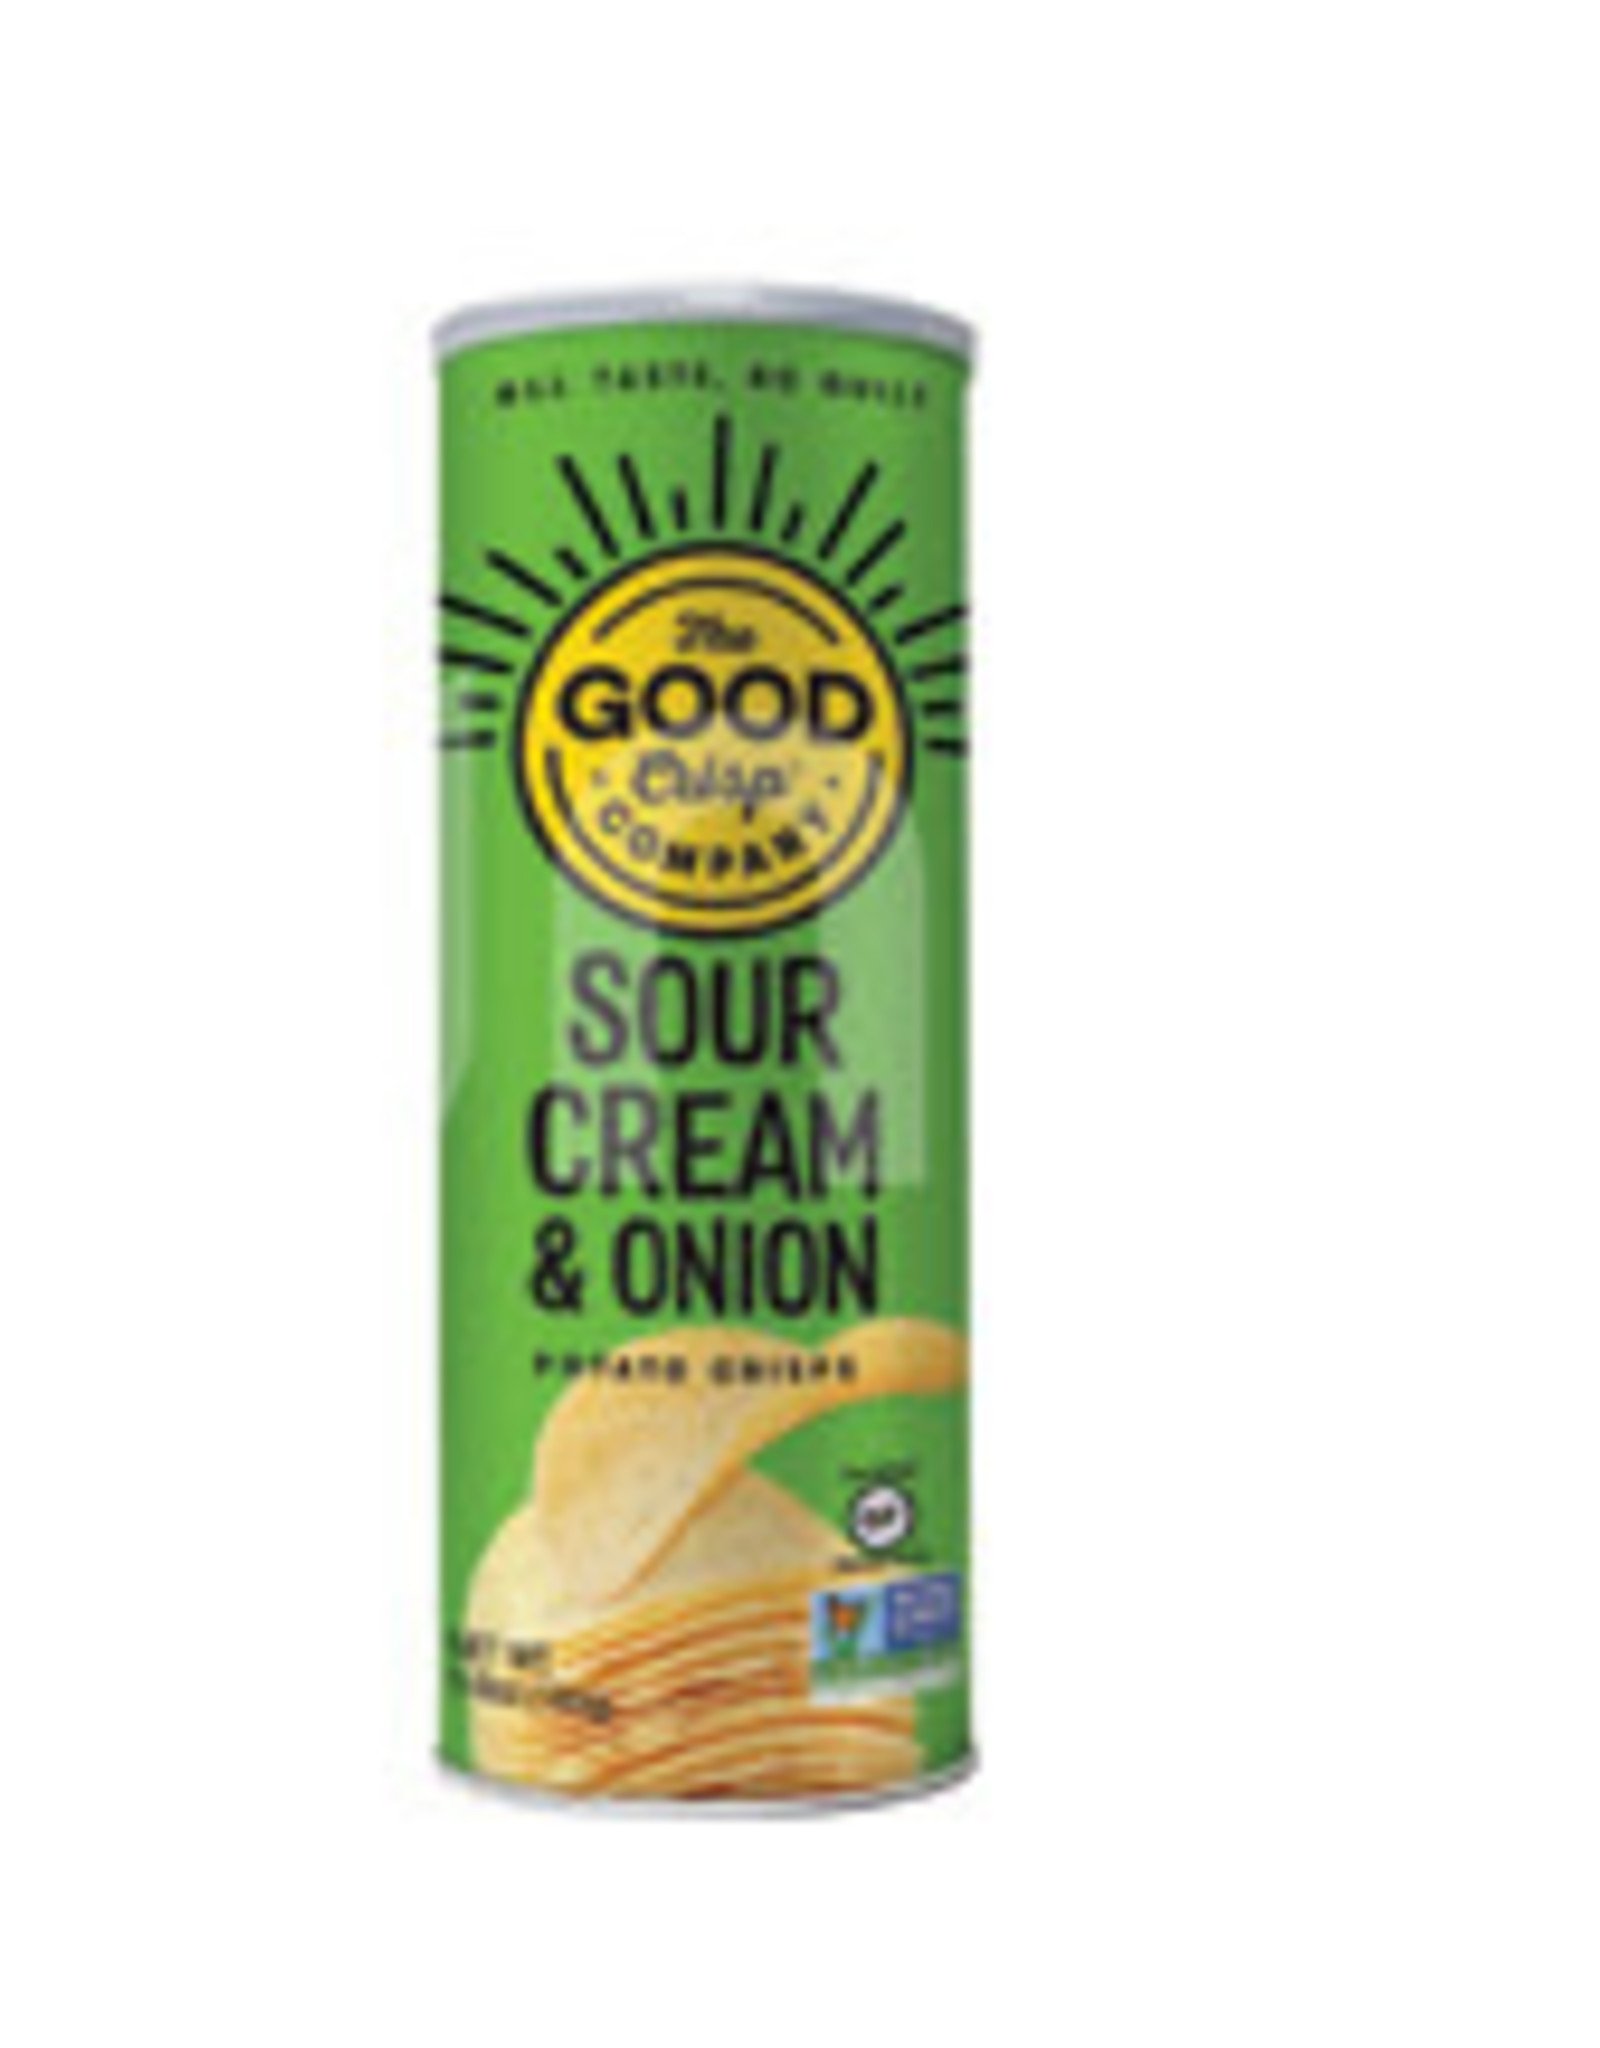 The Good Crisp Co. Potato Chips; Sour Cream & Onion 5.6oz